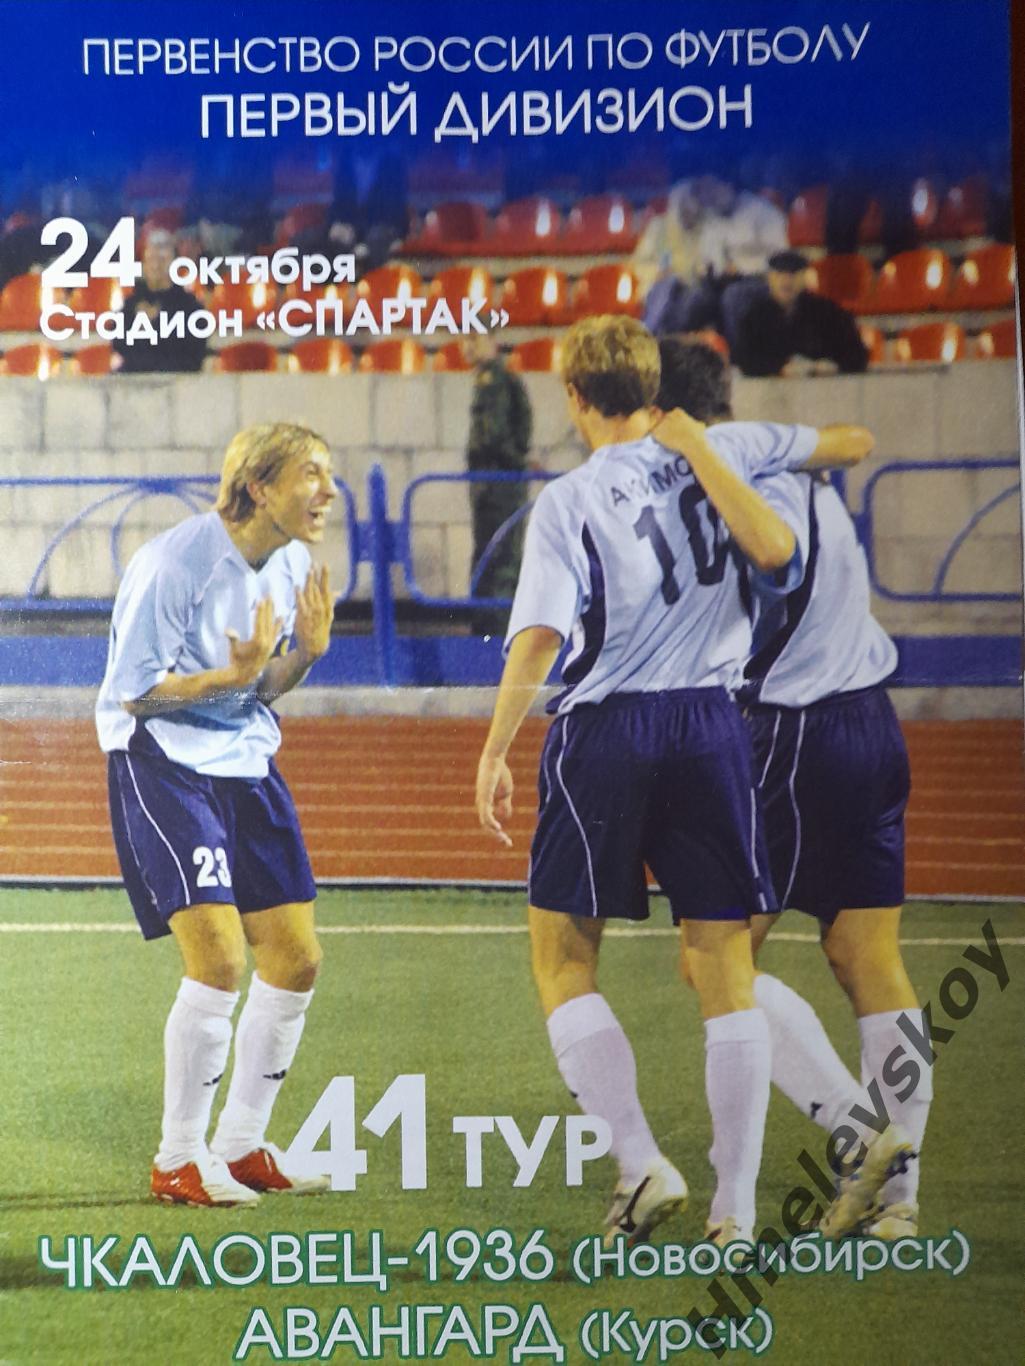 Чкаловец-1936 Новосибирск - Авангард Курск, Первый дивизион, 25.10.2005 г.